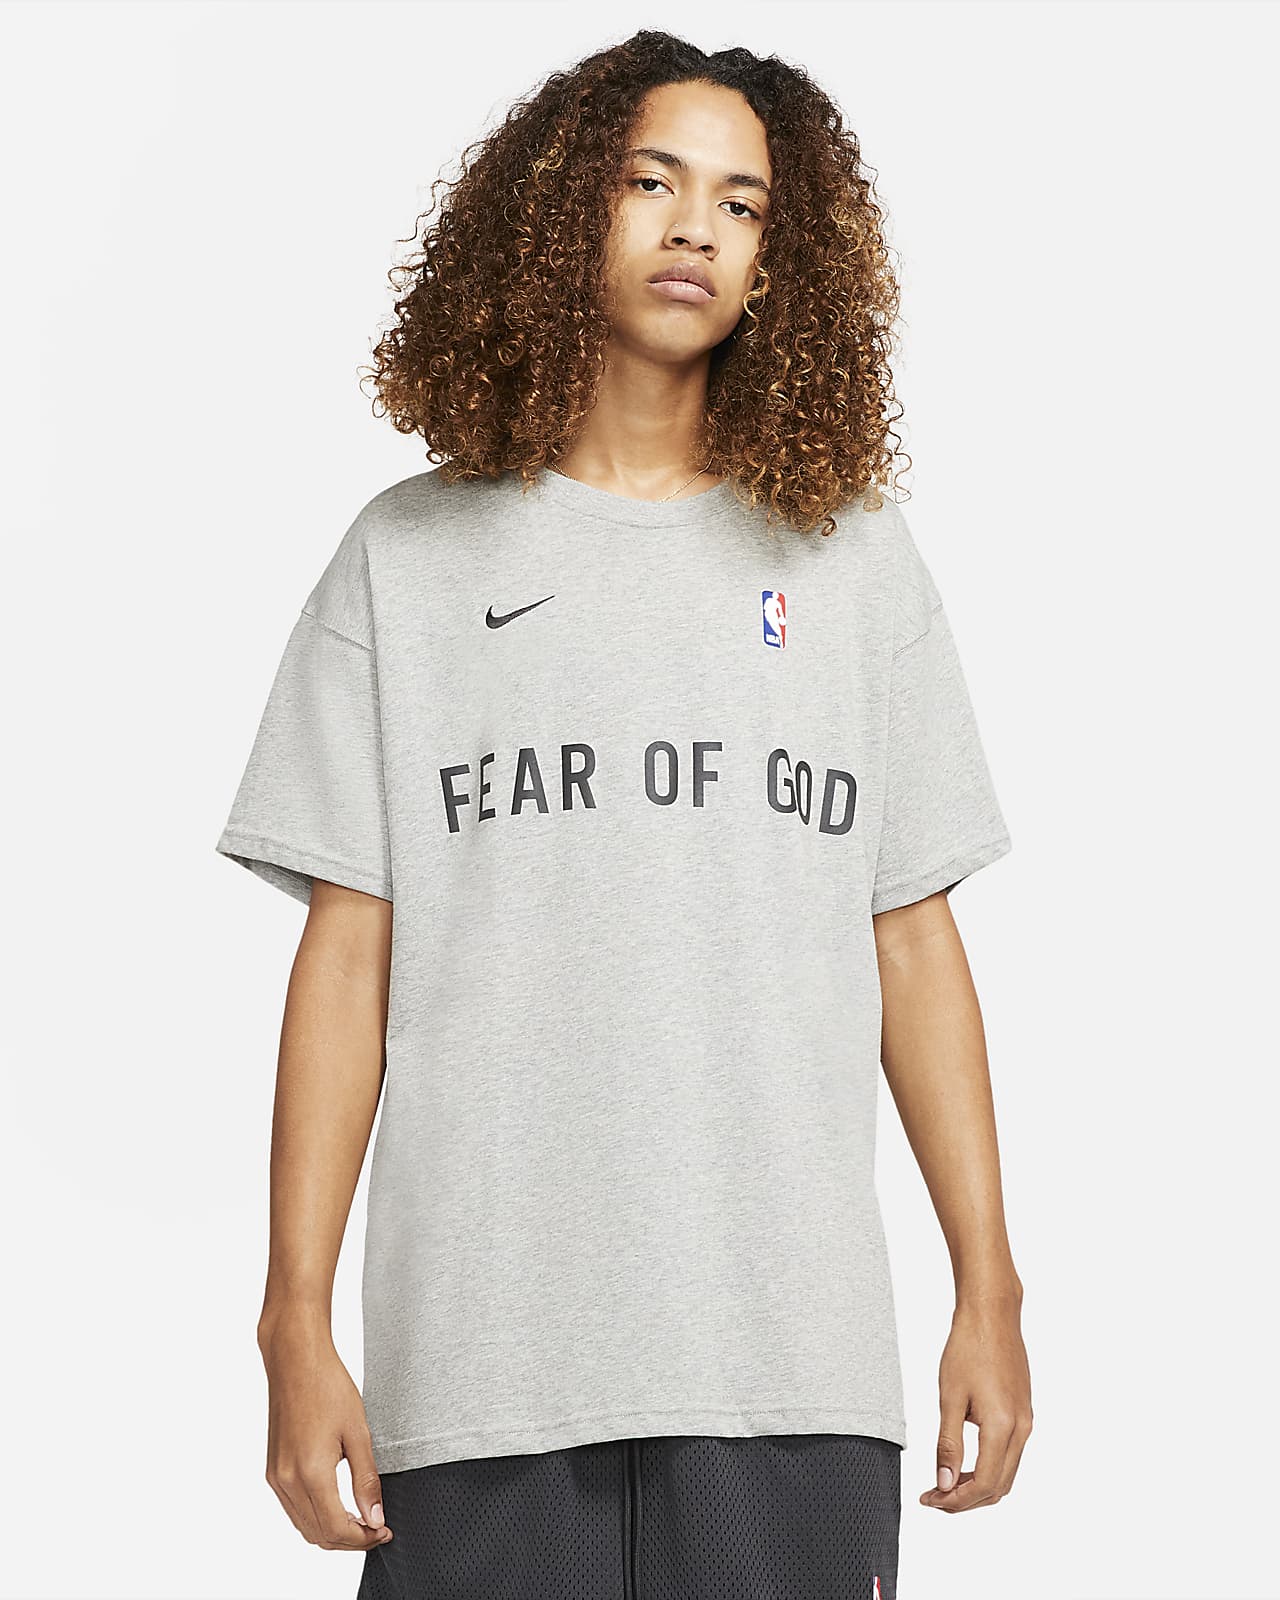 M ナイキ フィアオブゴッド tシャツ Nike fear of god tee